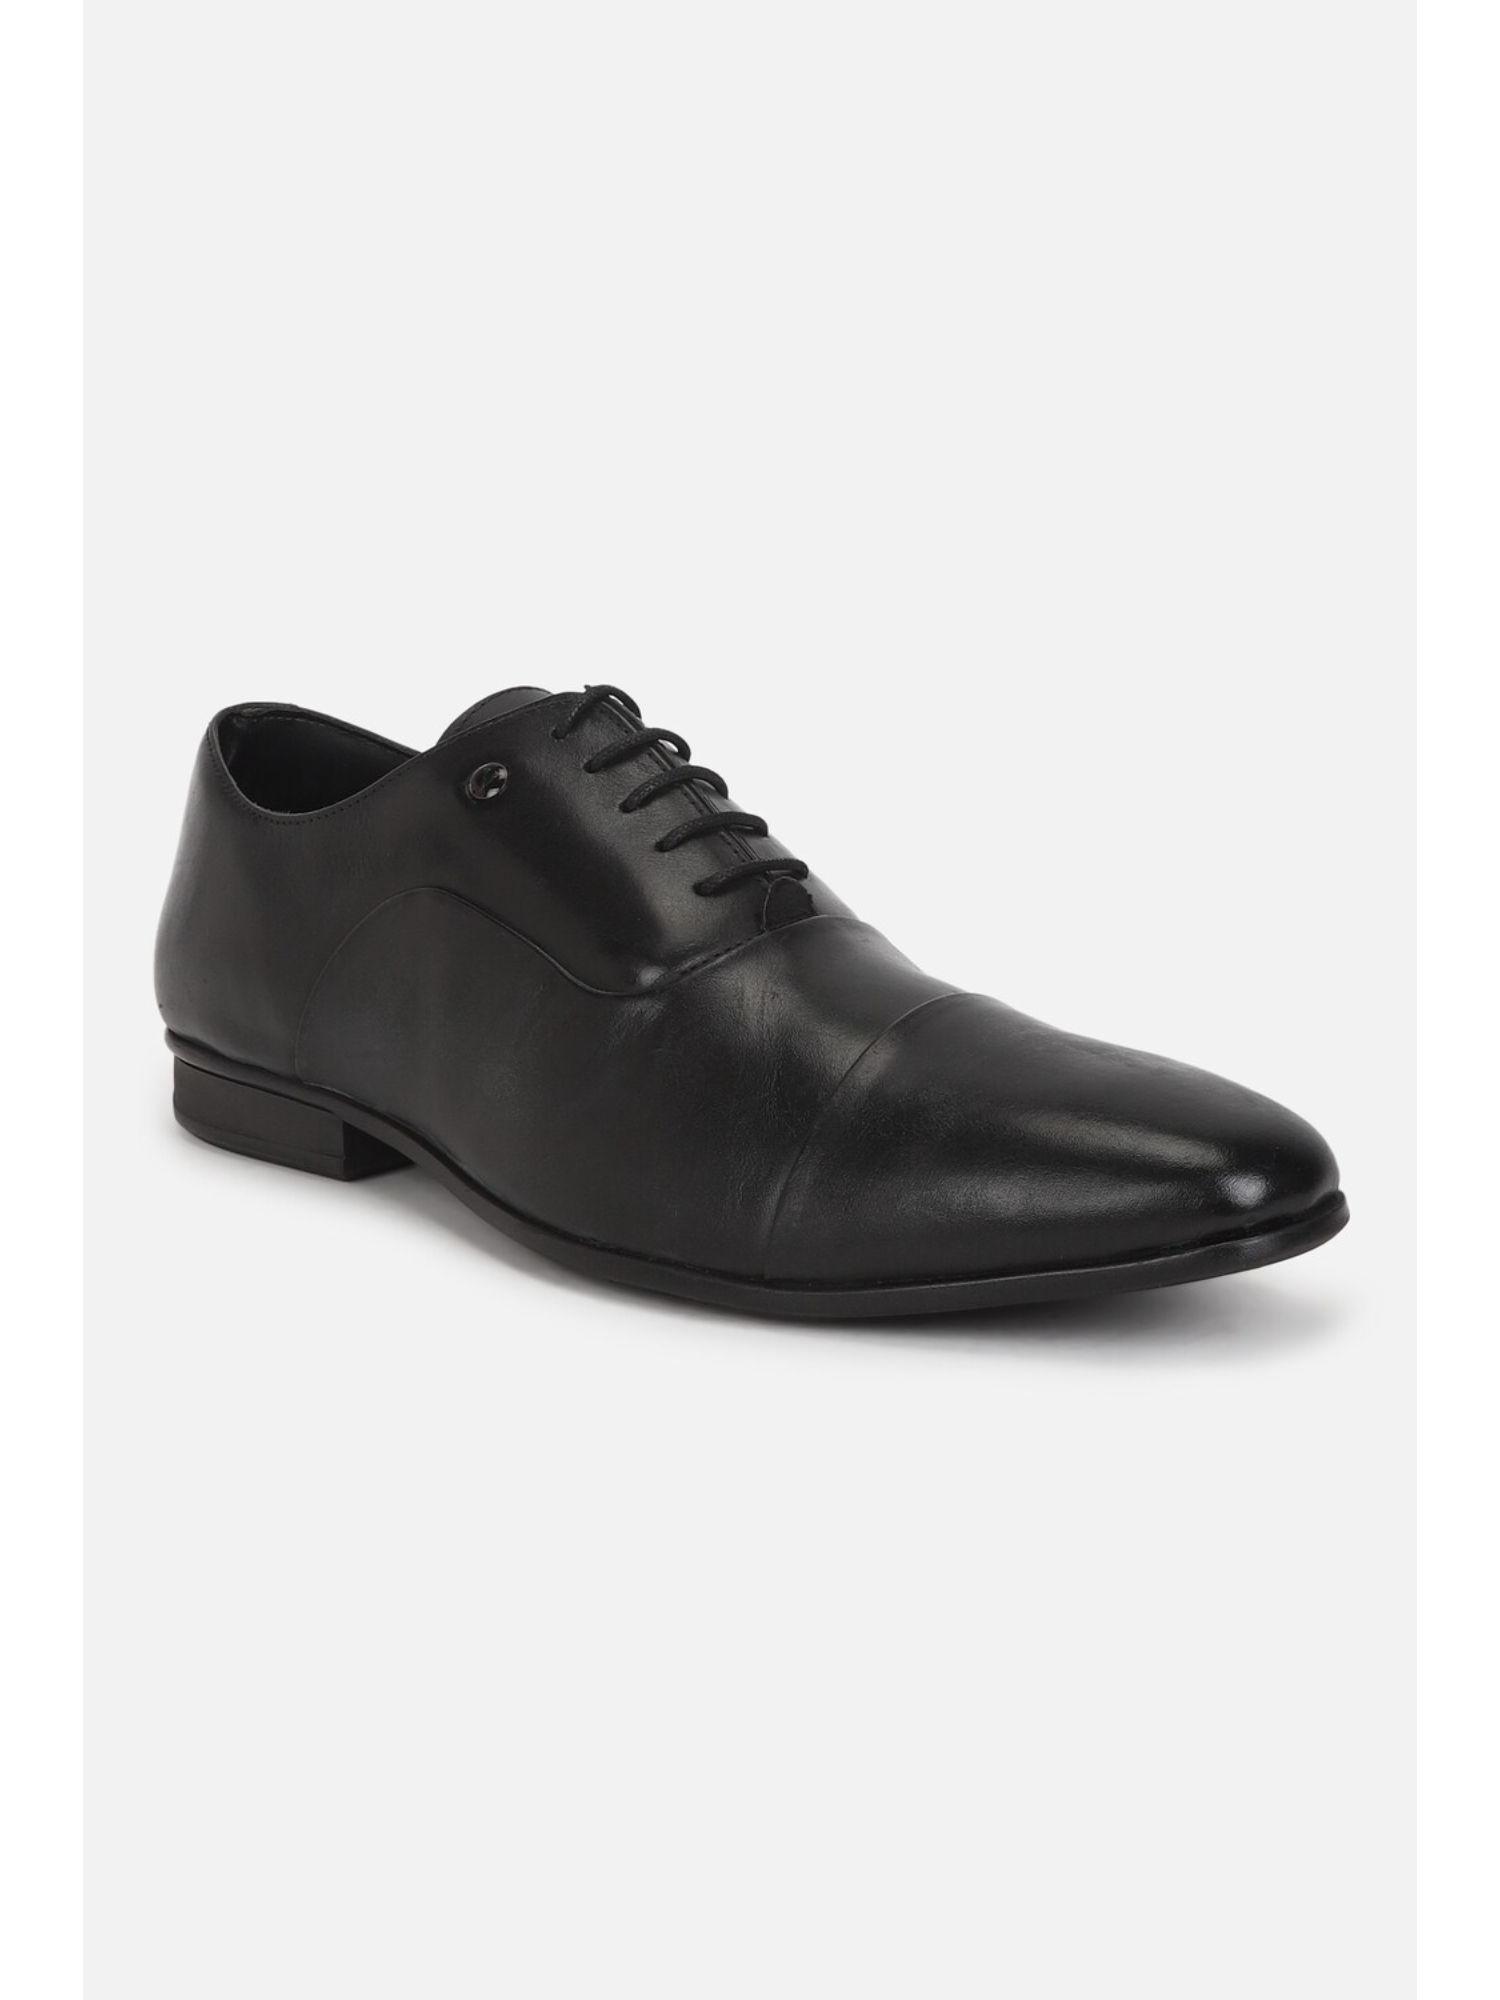 men-black-lace-up-oxford-shoes